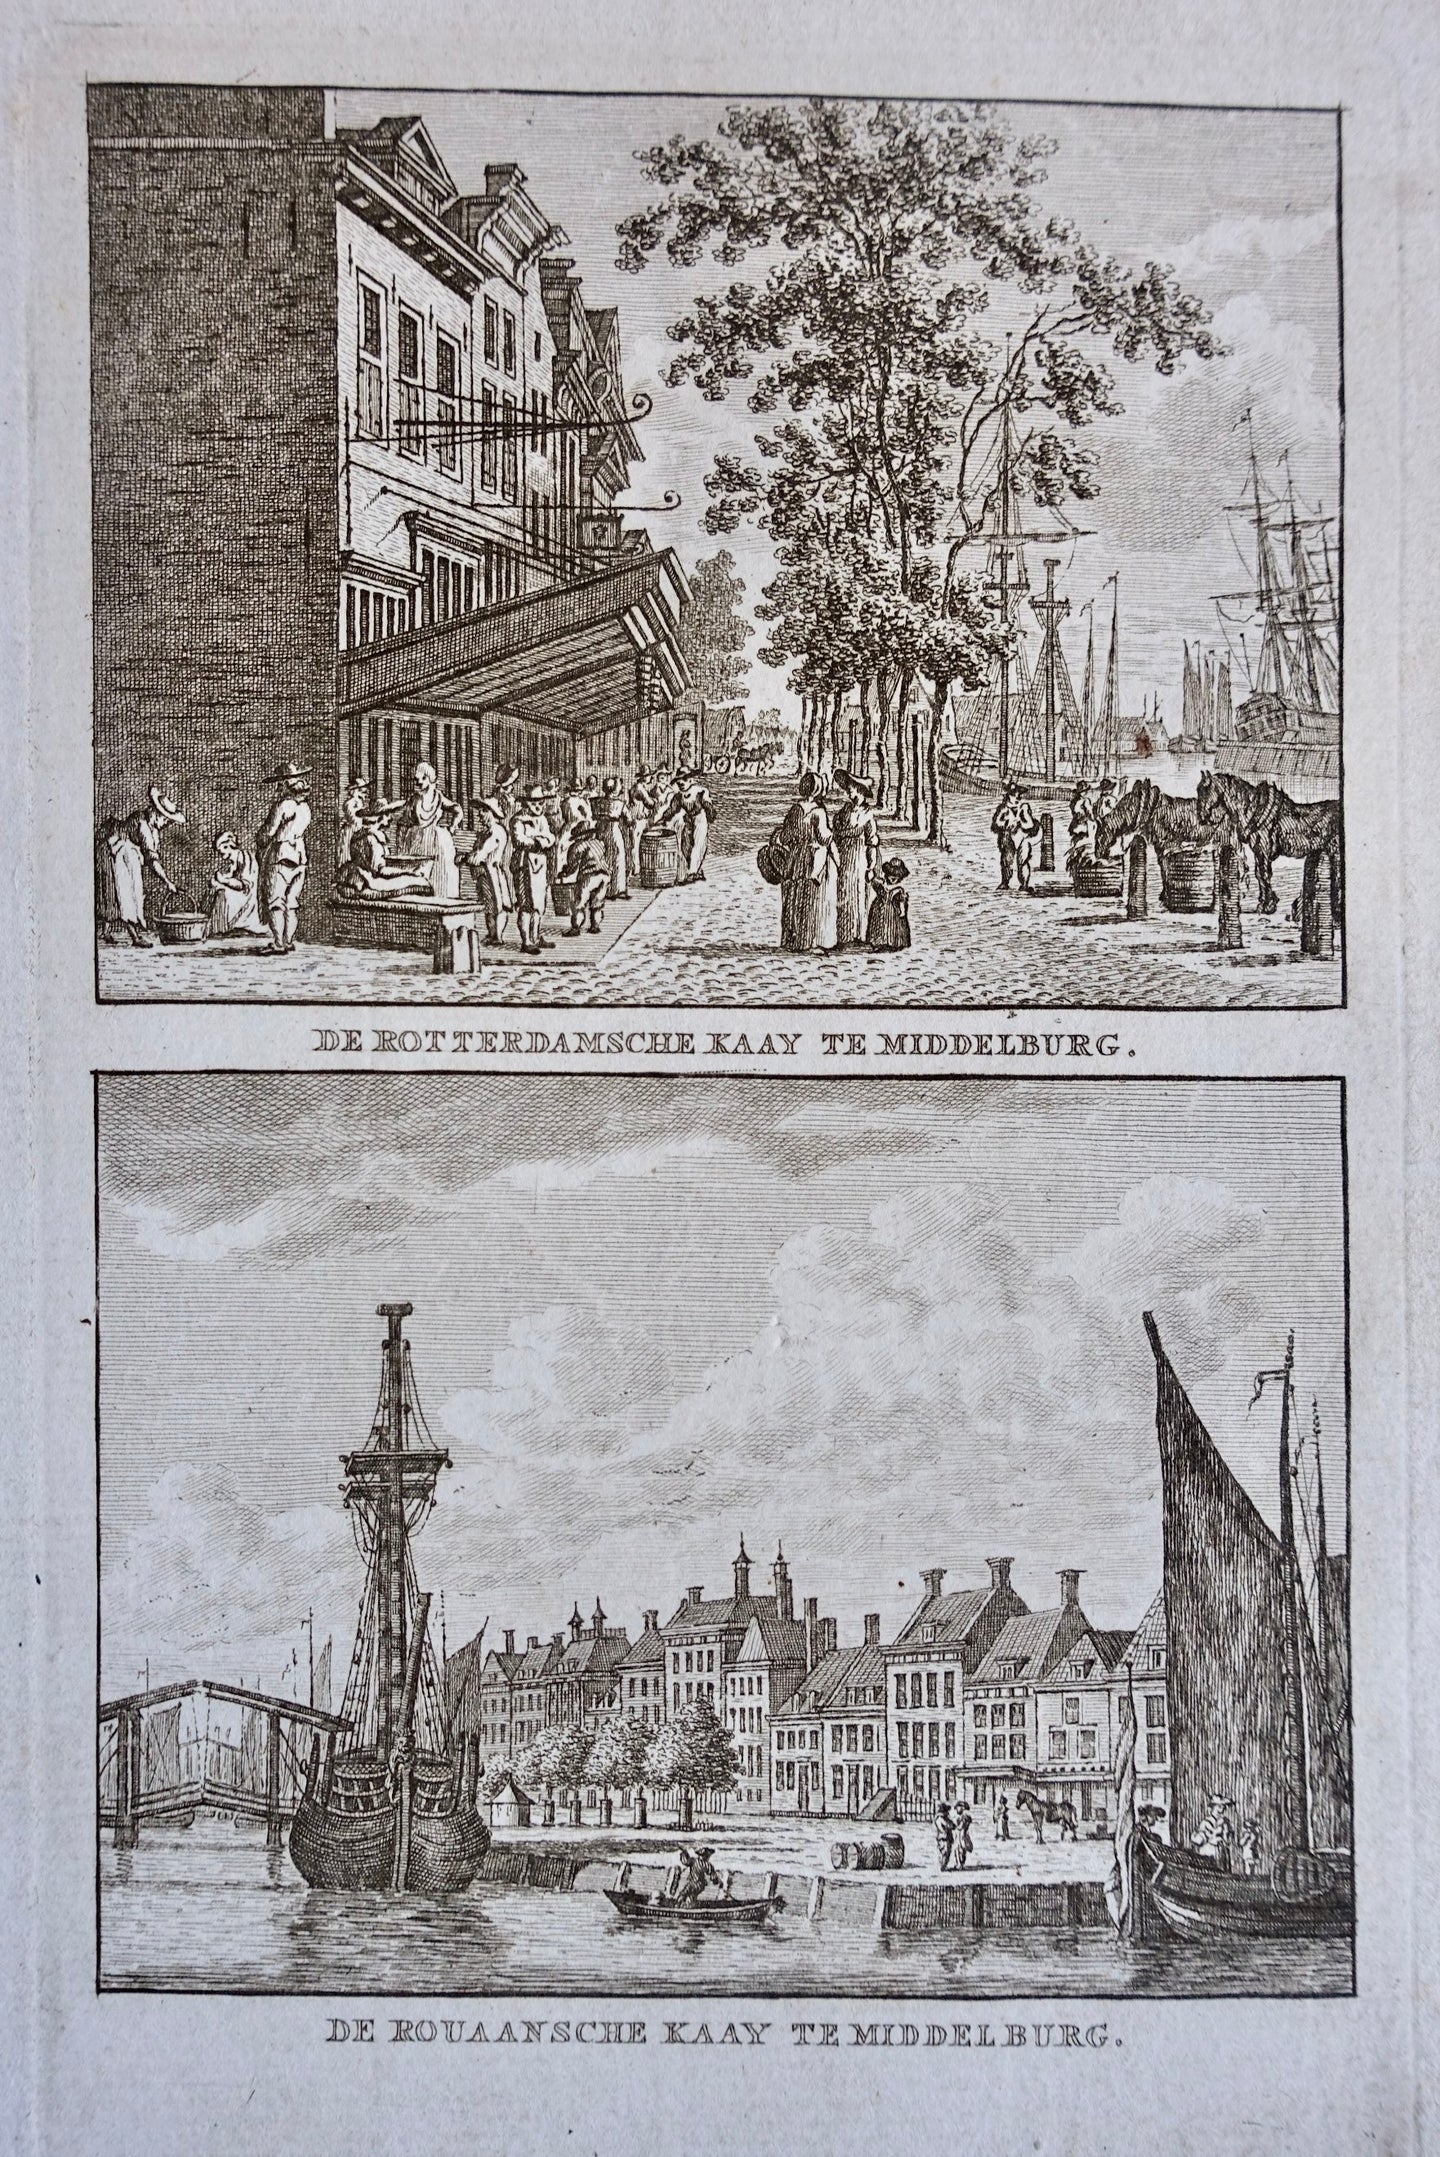 Middelburg Rotterdamse Kaai en Rouaanse Kaai - KF Bendorp - 1793